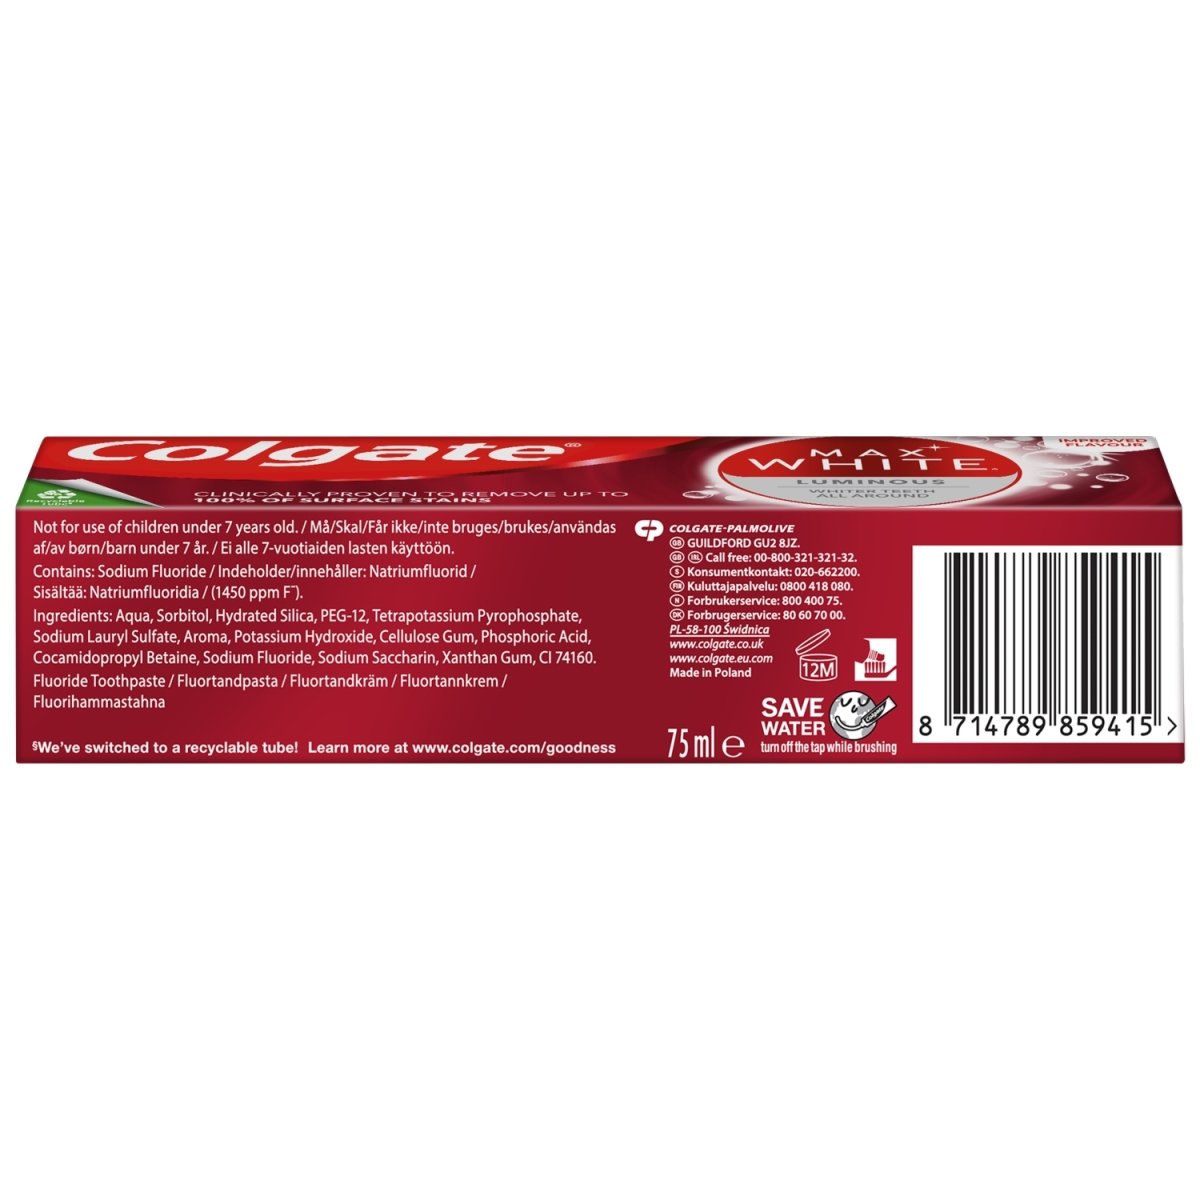 Colgate Toothpaste Max White Luminous - Intamarque 8714789859415